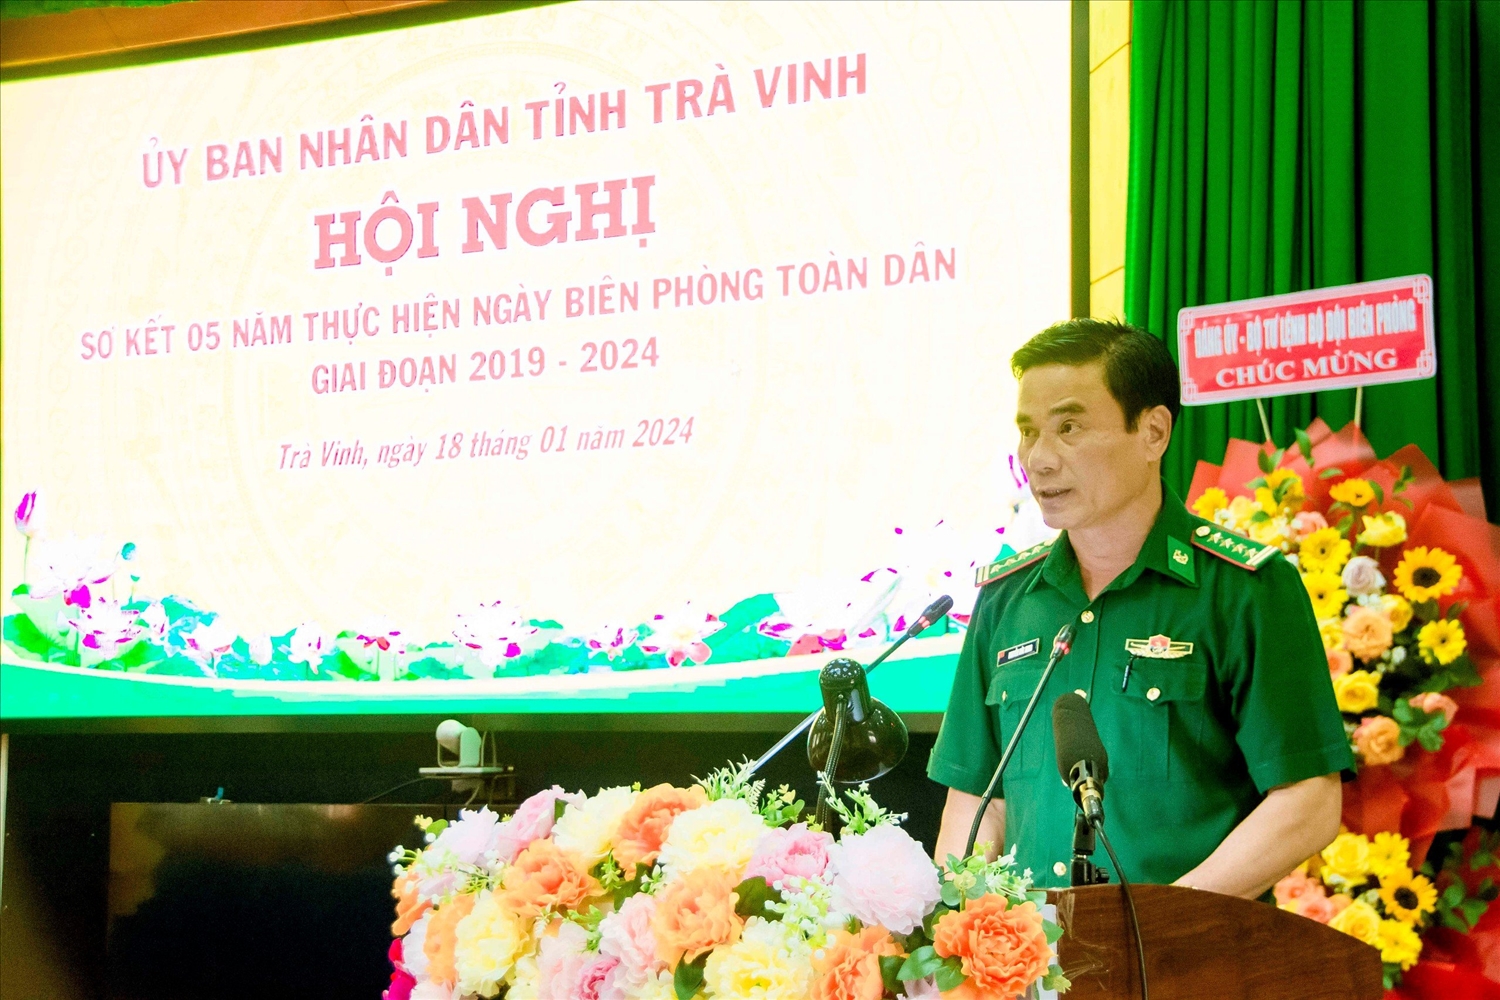 Đại tá Nguyễn Đức Minh, Chỉ huy trưởng BĐBP tỉnh Trà Vinh phát biểu tại hội nghị